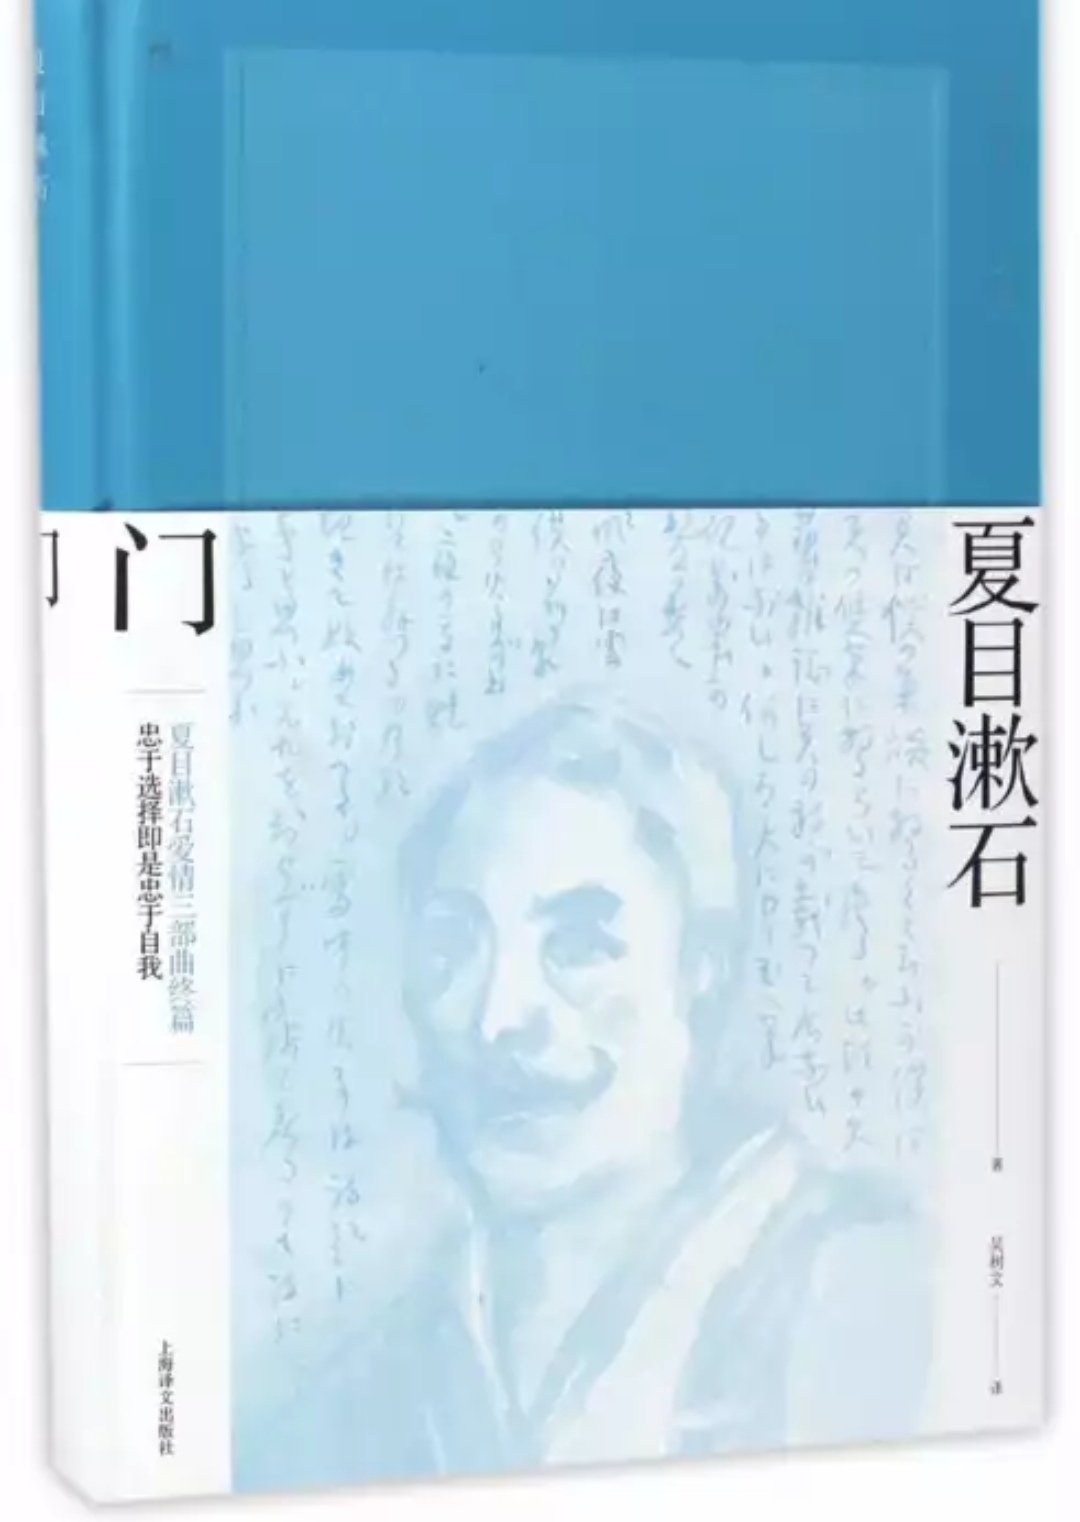 上海译文出版社这一套夏目漱石装帧很不错，颜色从浅蓝到深蓝，可惜的是，没有把少爷出了。还是有点遗憾。大促很好。